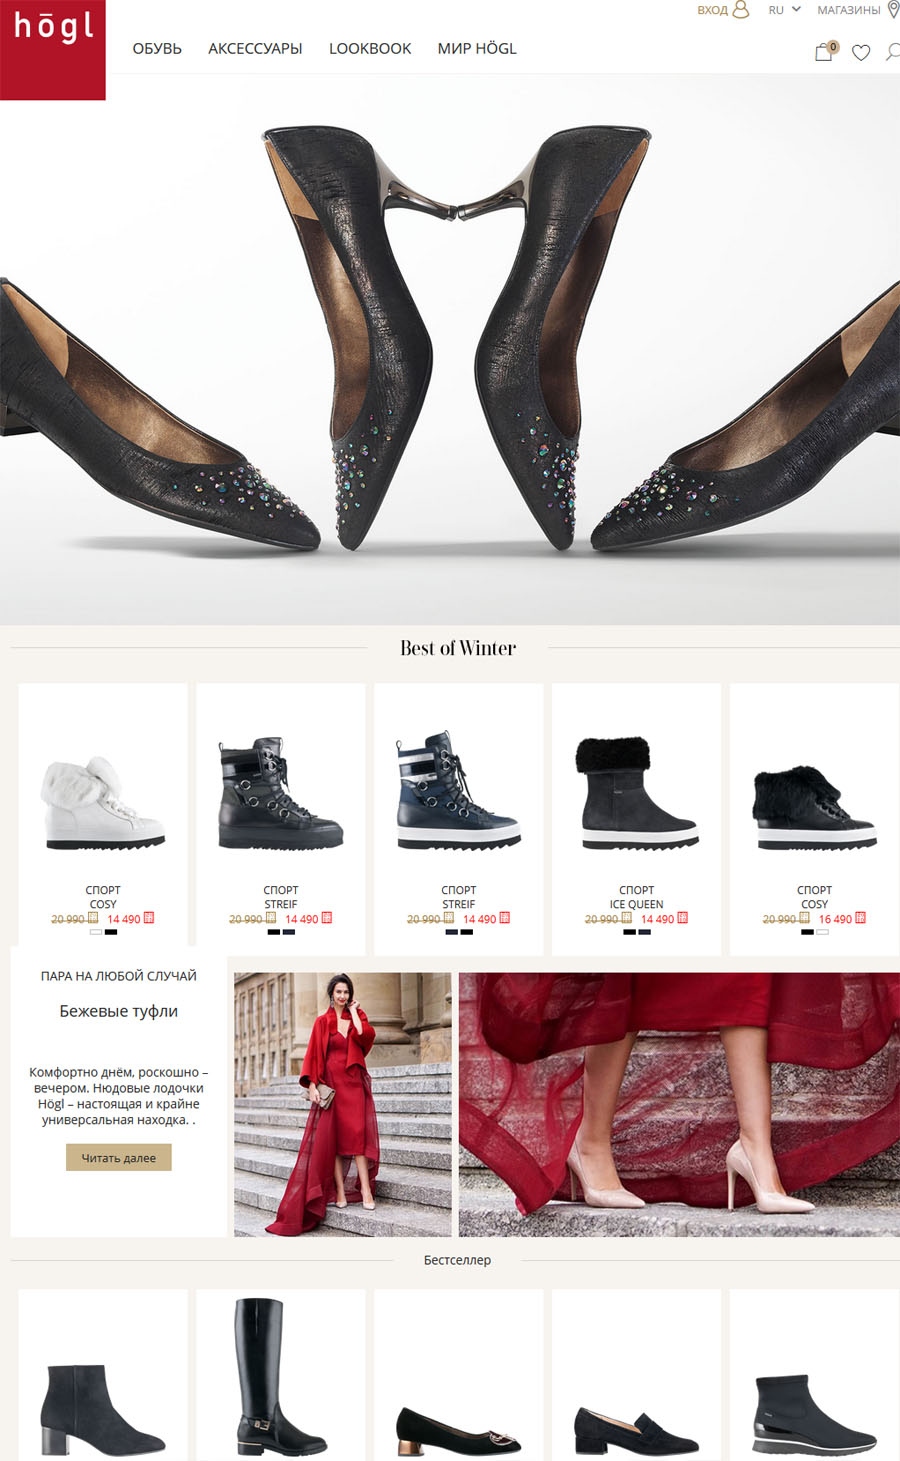 Купить Обувь Хегель В Интернет Магазине